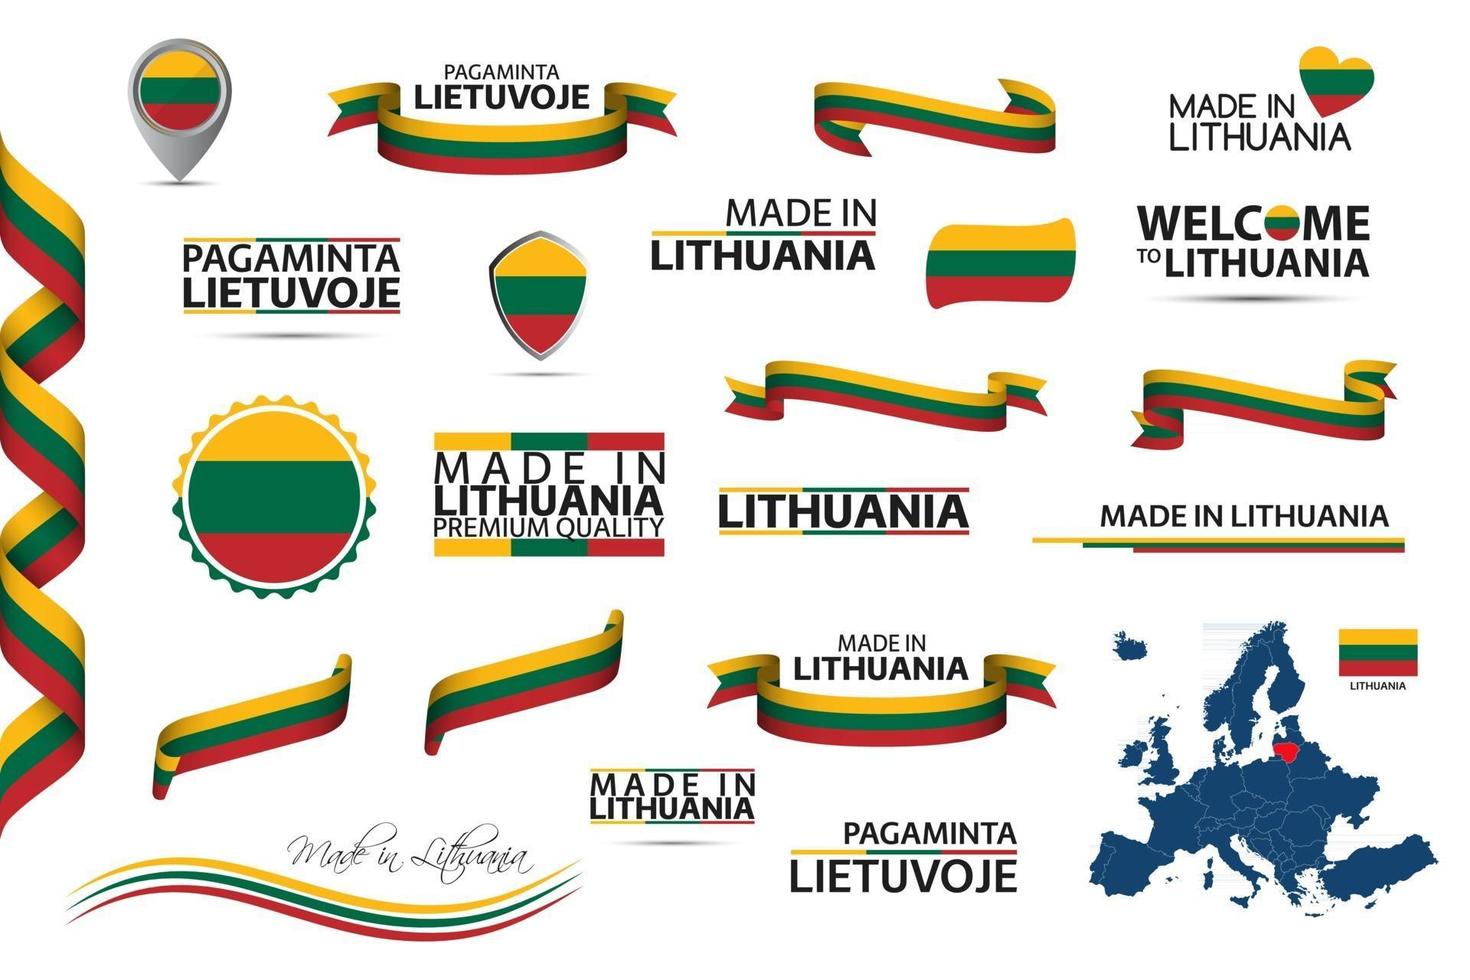 gran conjunto de vectores de cintas de lituania símbolos iconos y banderas aislados sobre un fondo blanco hecho en lituania tricolor nacional irlandés de primera calidad para sus infografías y plantillas